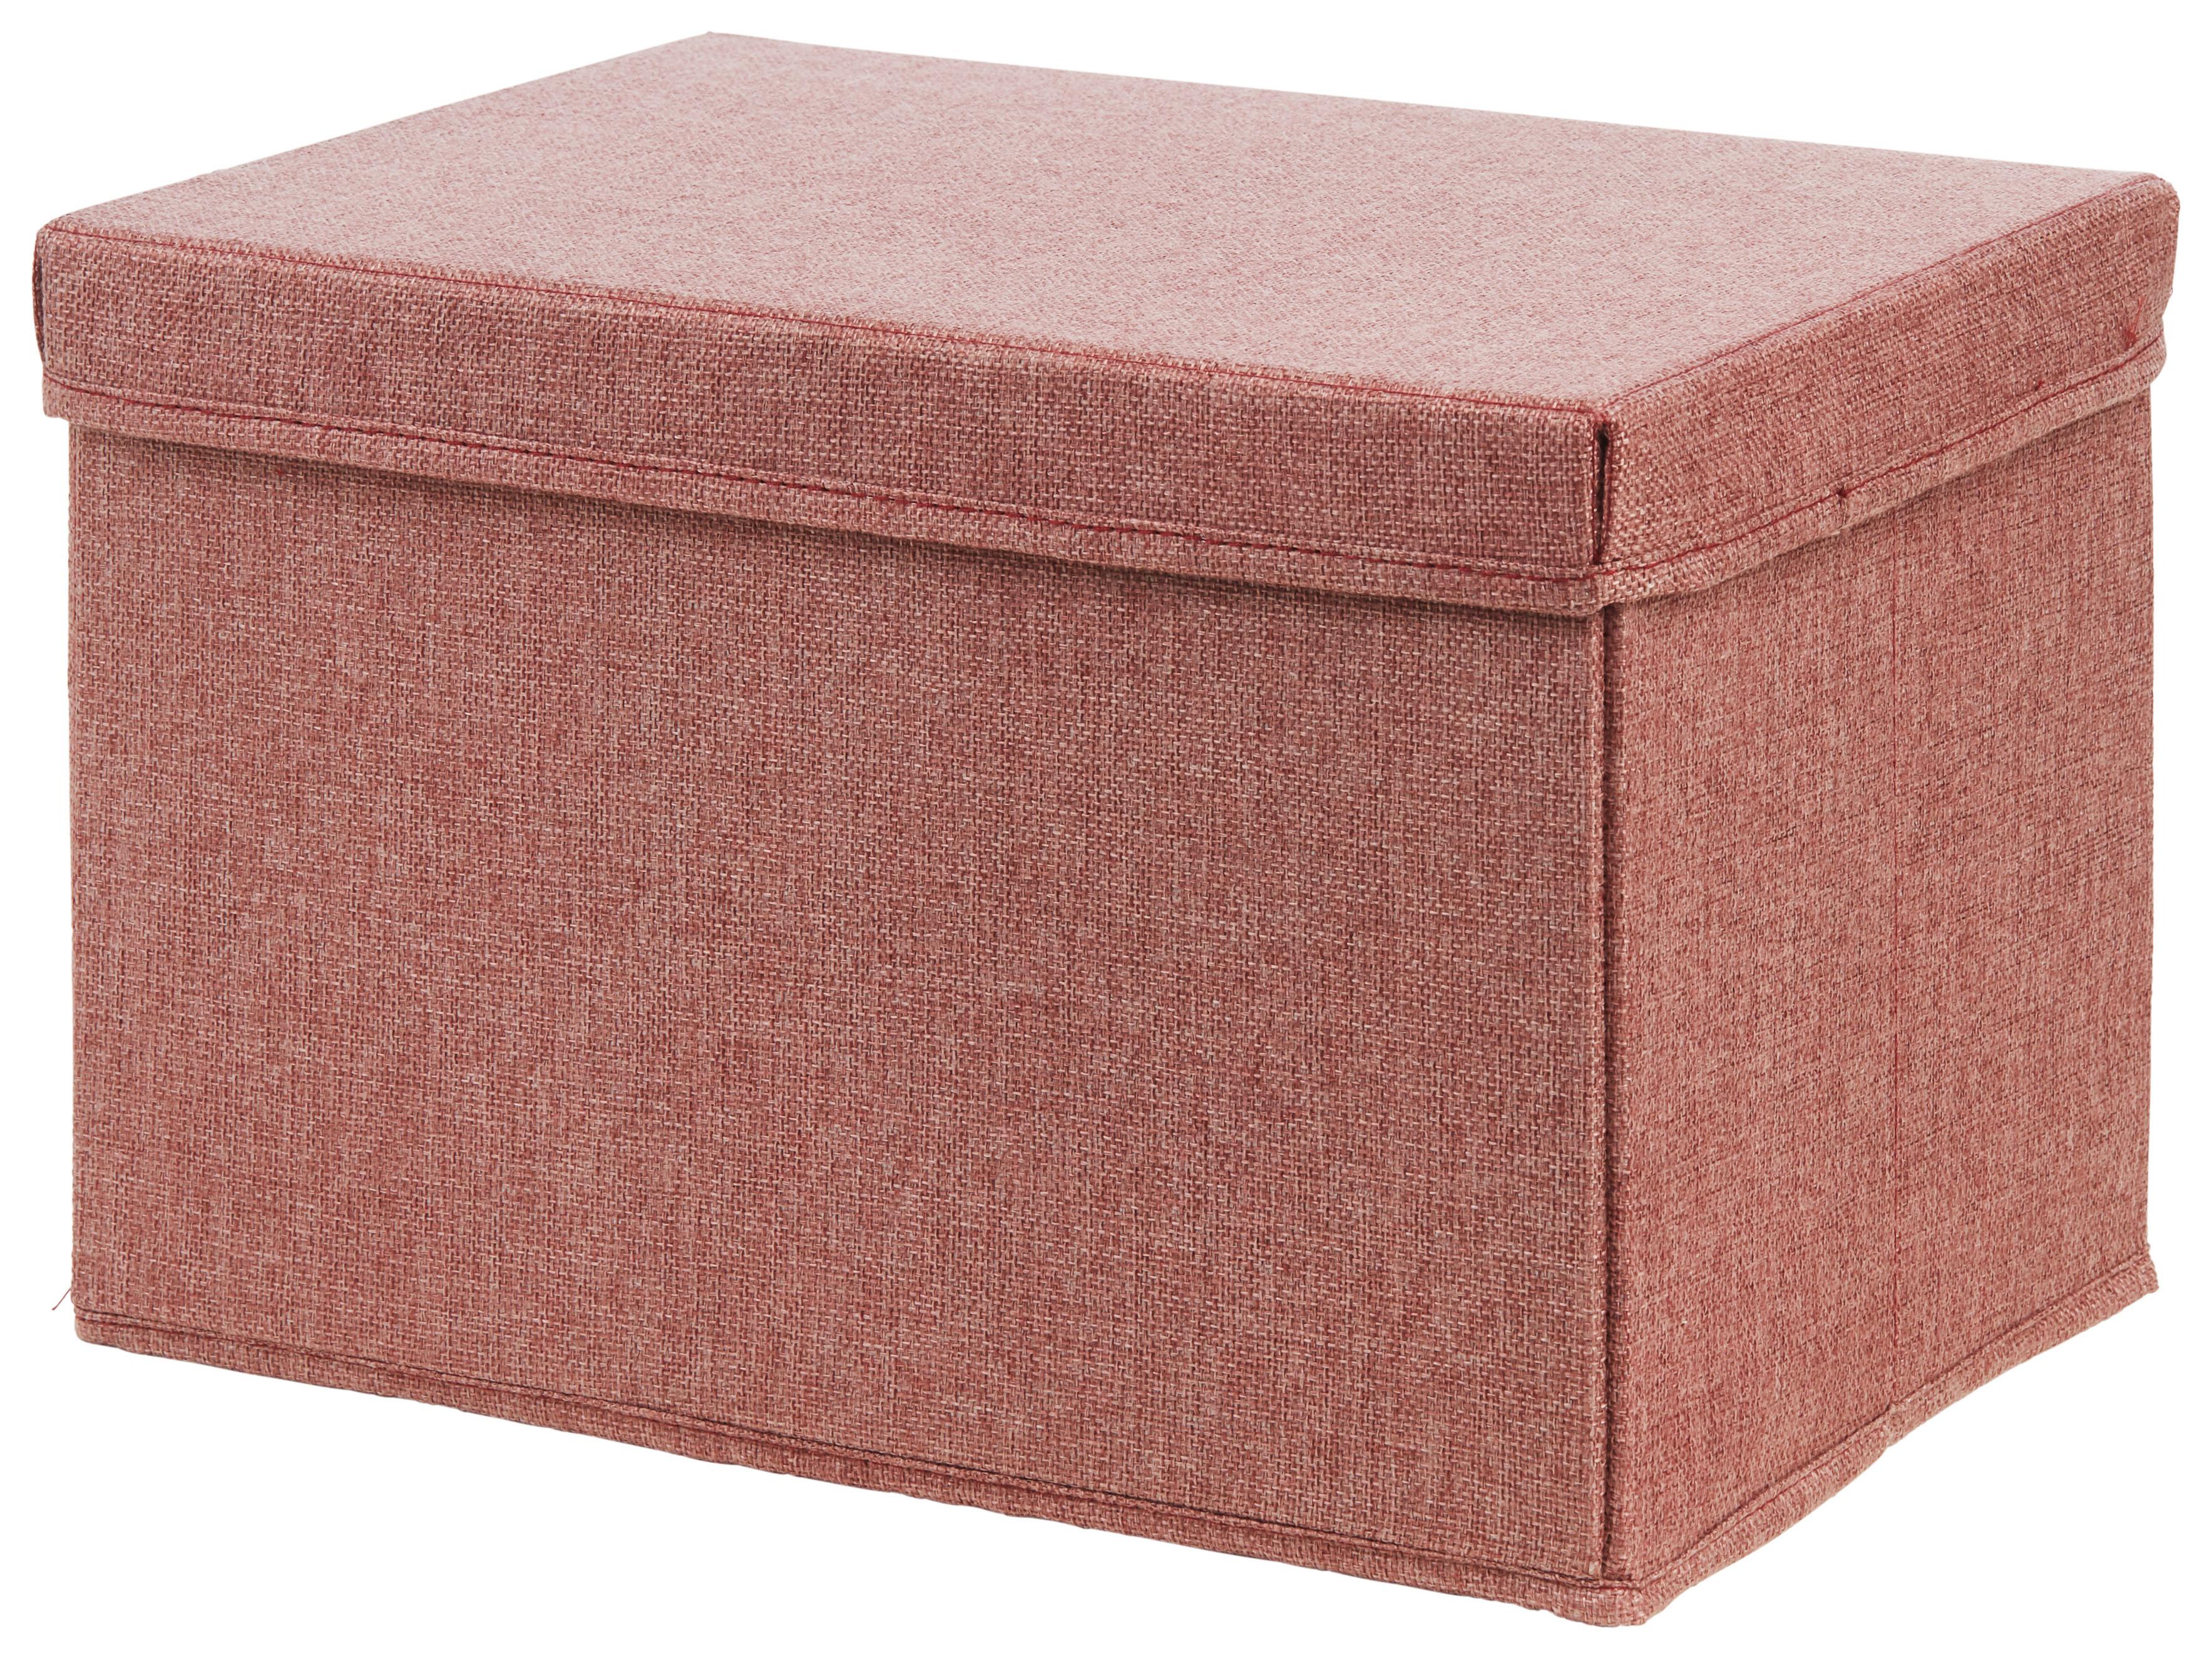 Skladací Box Cindy - Ca. 23l -Ext- - červenohnedá, Moderný, kartón/textil (38/26/24cm) - Premium Living